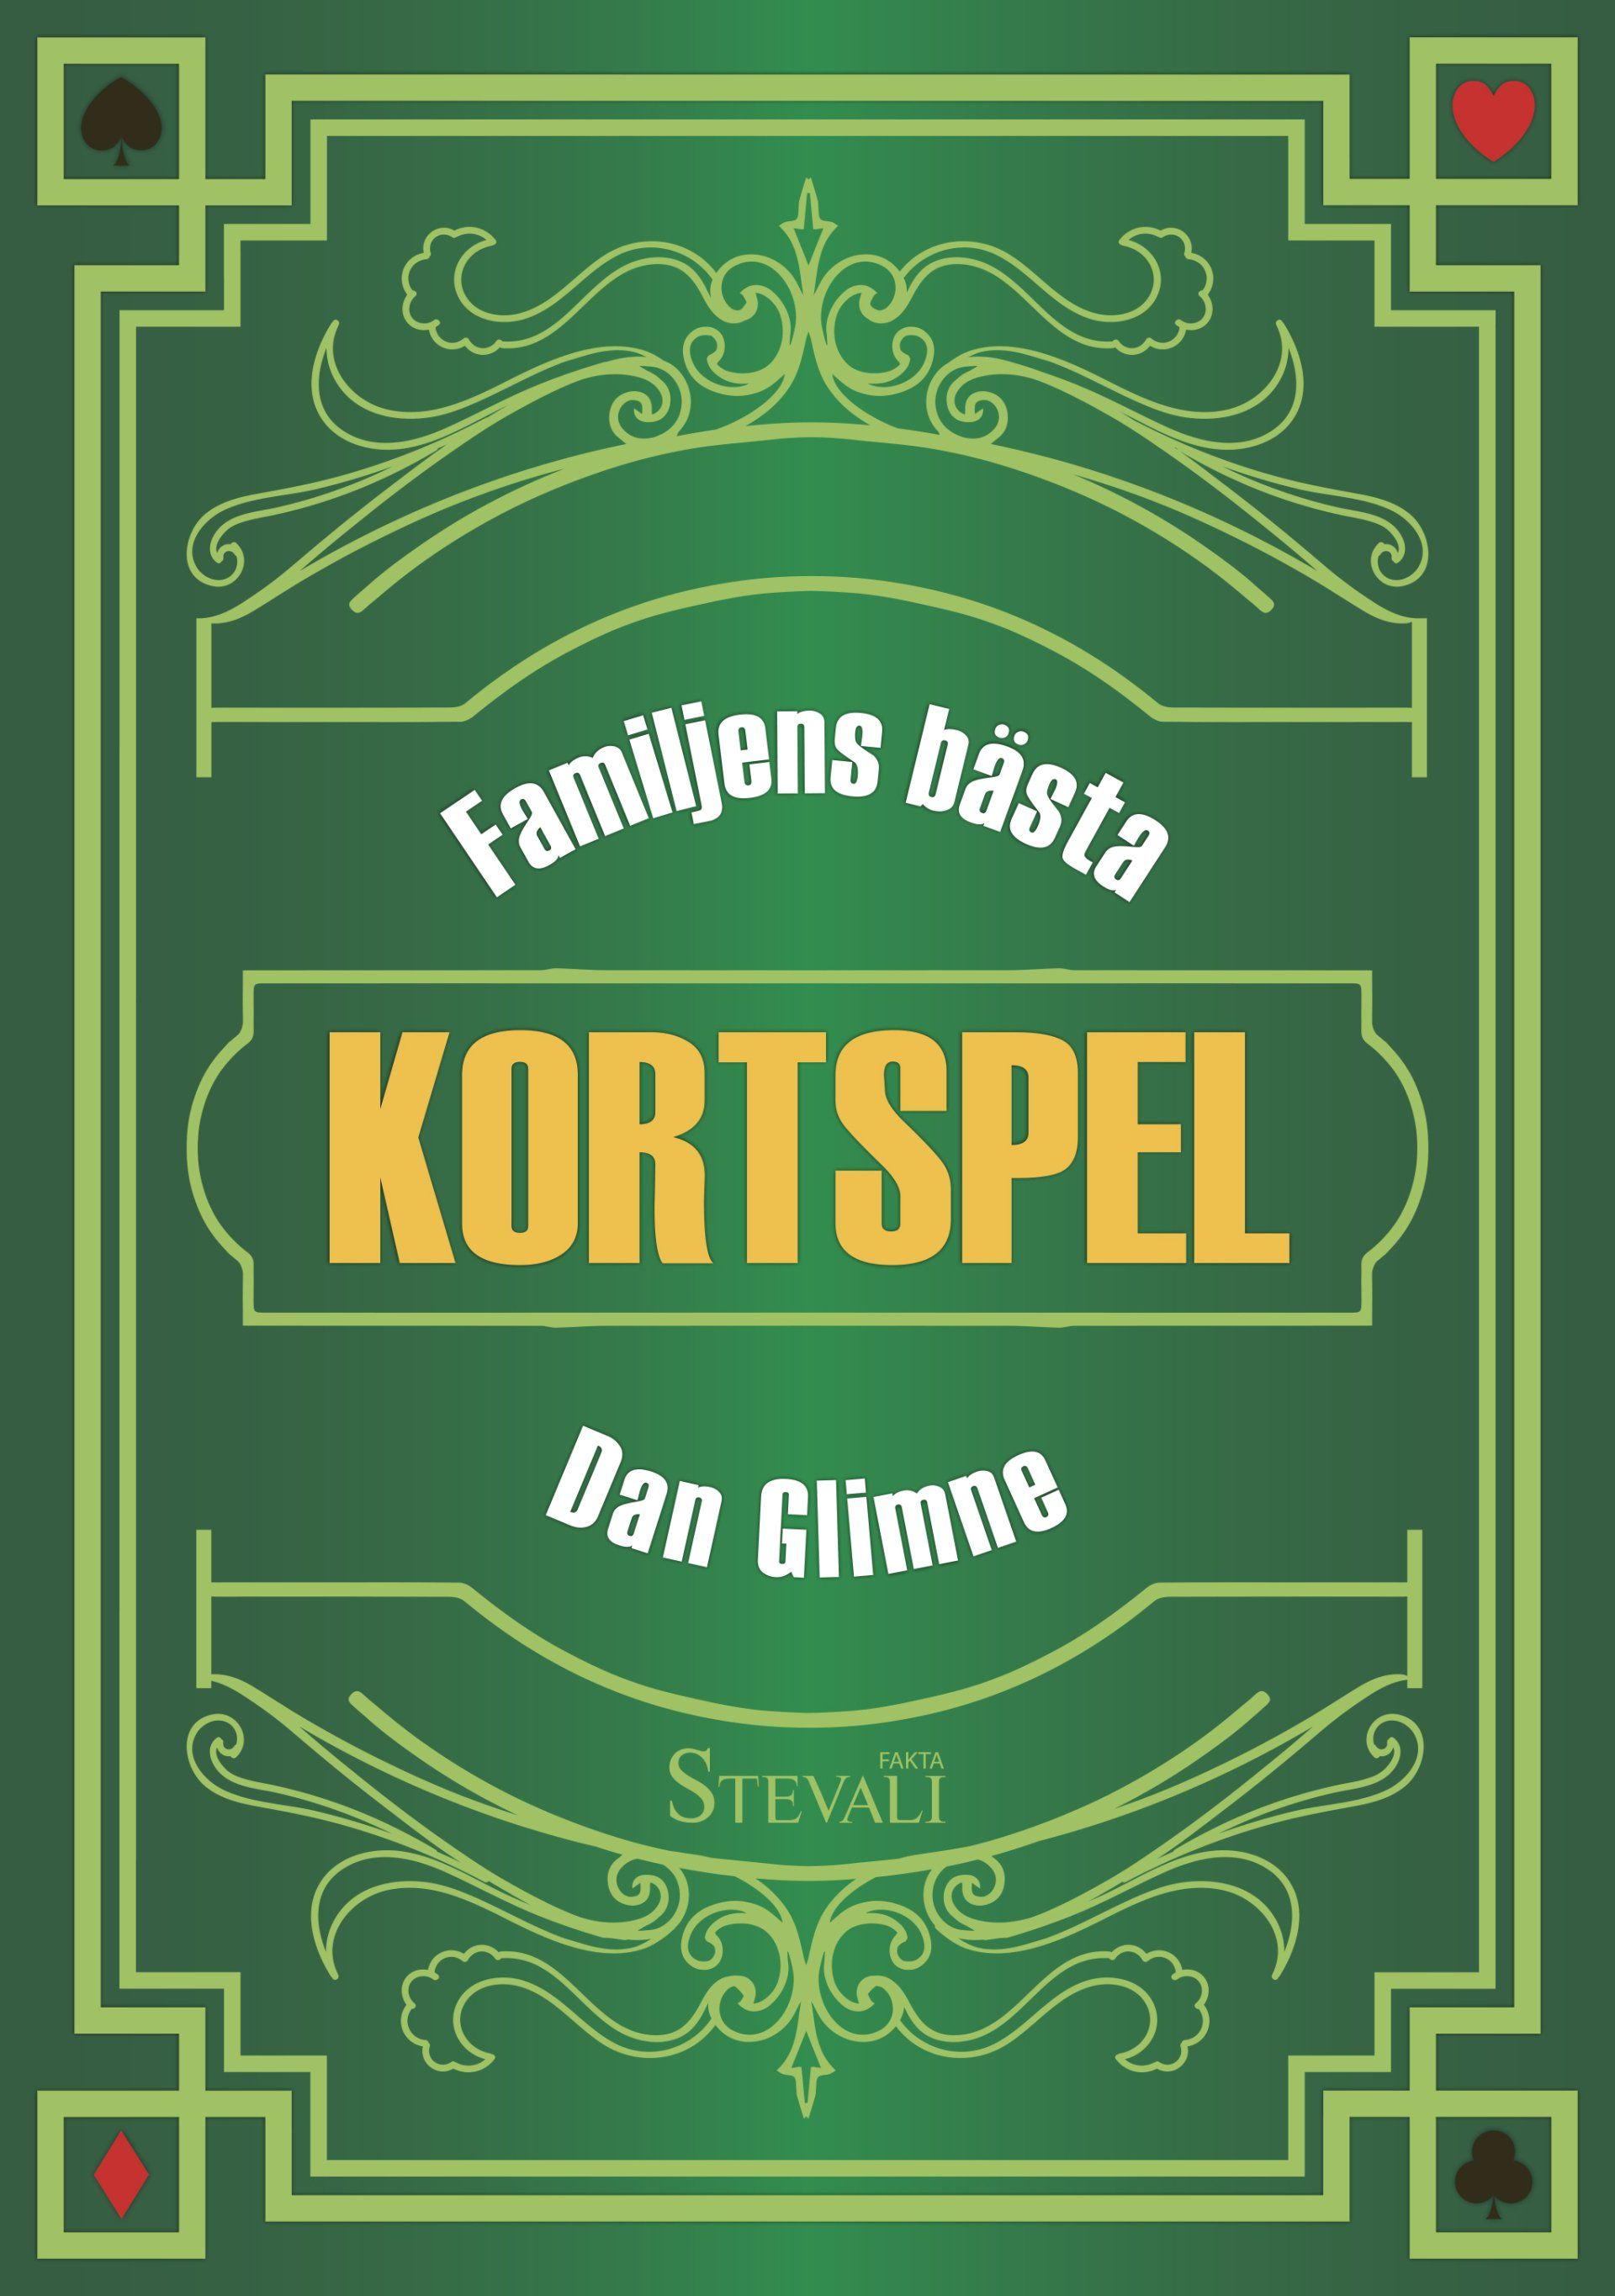 Faktaboken Familjens bästa kortspel är skriven av Dan Glimne på Stevali Bokförlag.